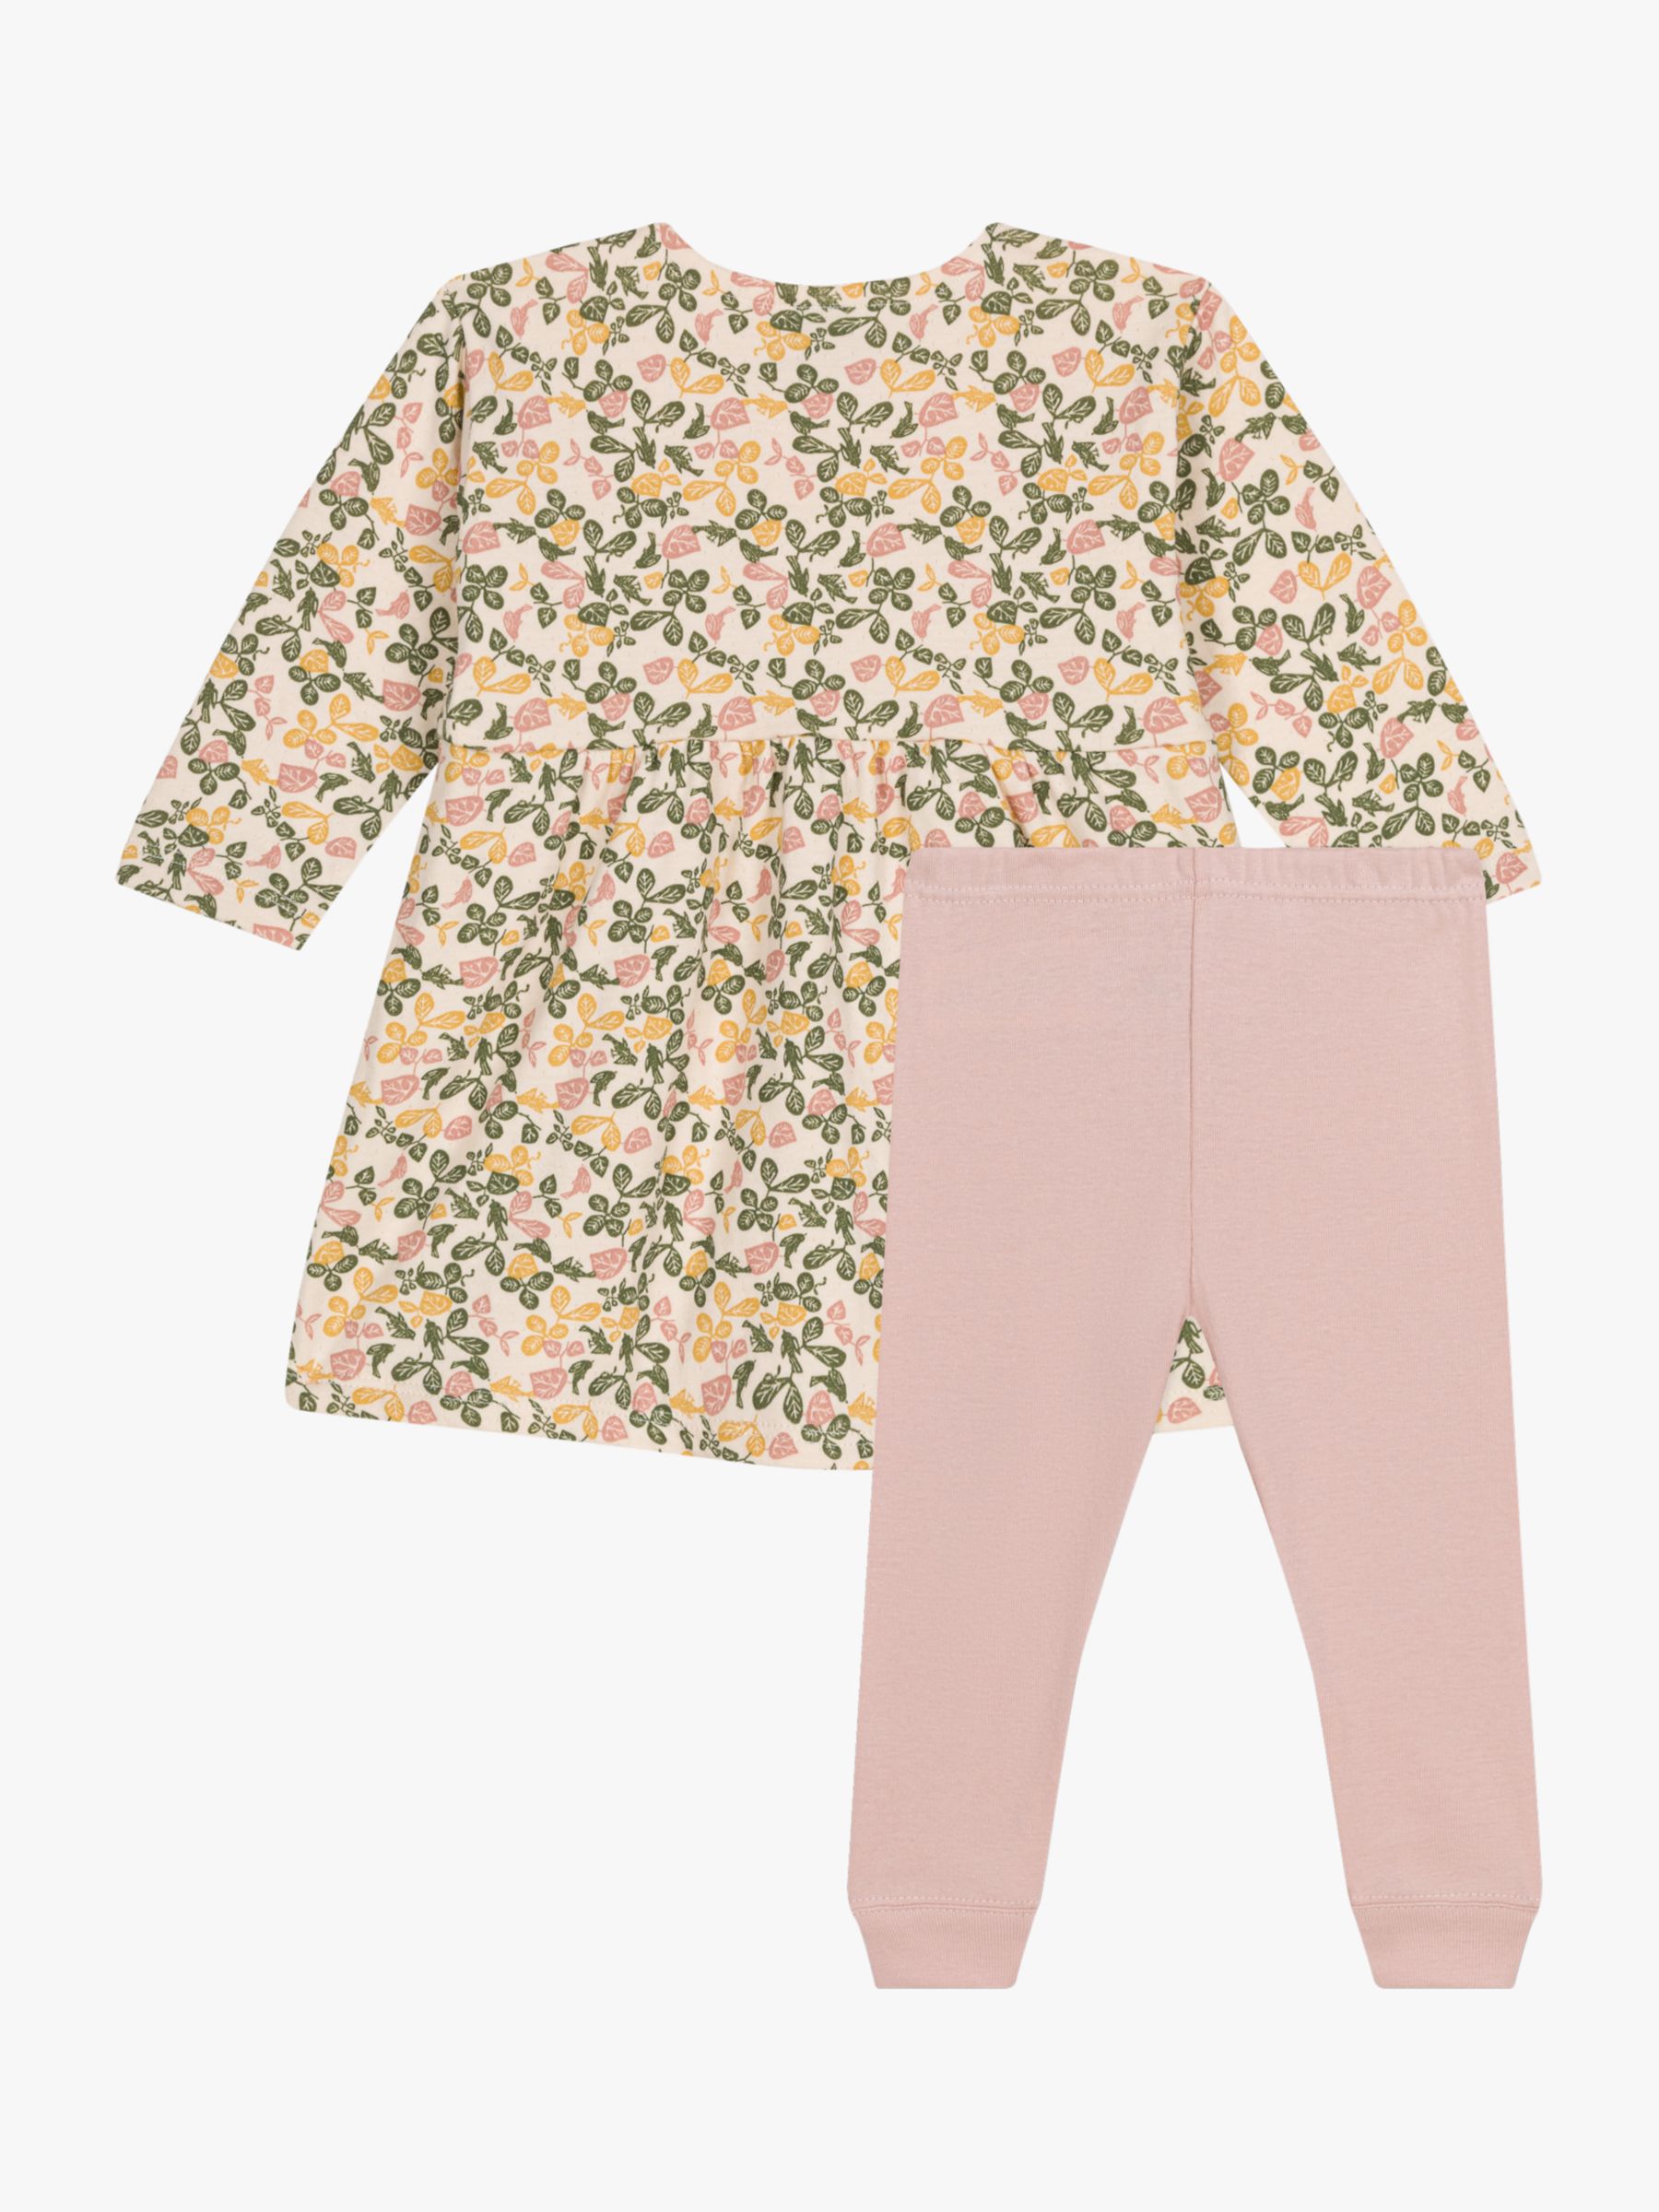 Petit Bateau Baby Floral Dress & Leggings Set, Avalanche/Multi, 6 months